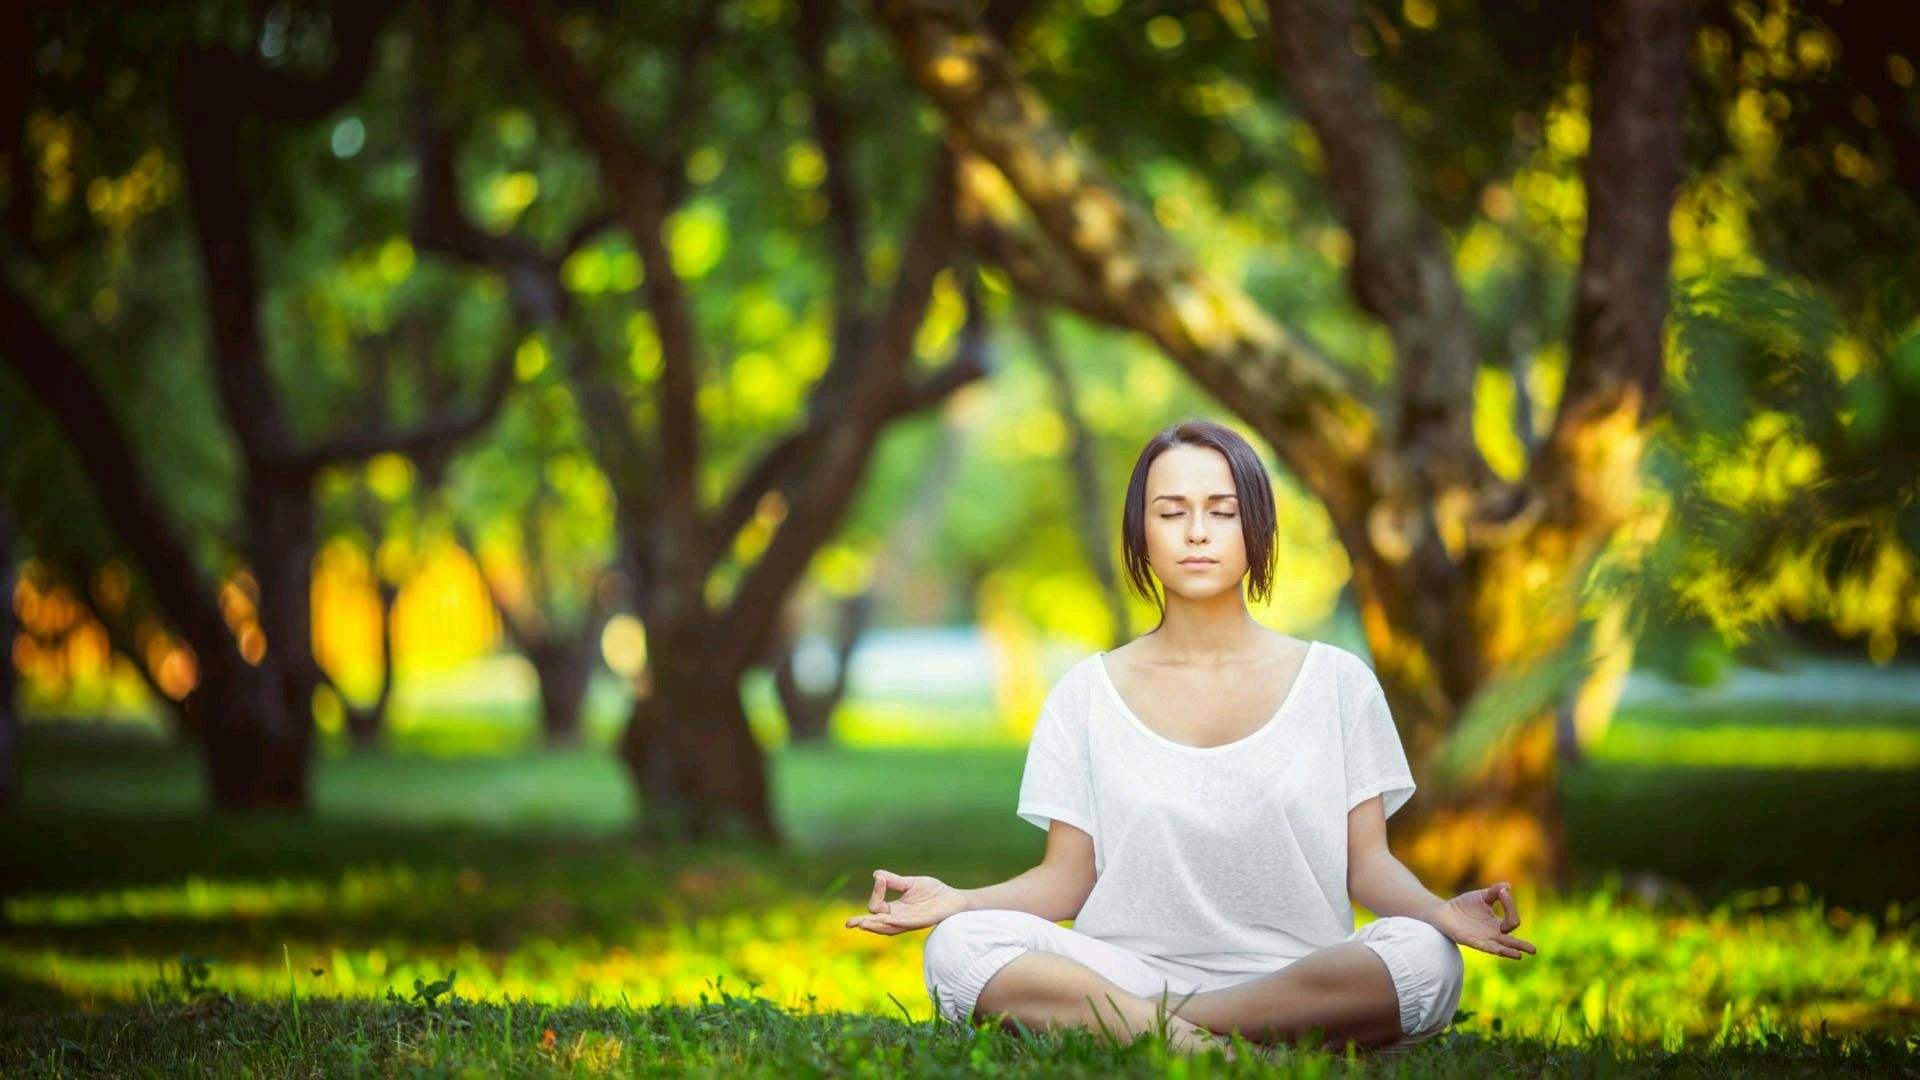 瑜伽有哪几种呼吸方法？零基础可以学习瑜伽吗？